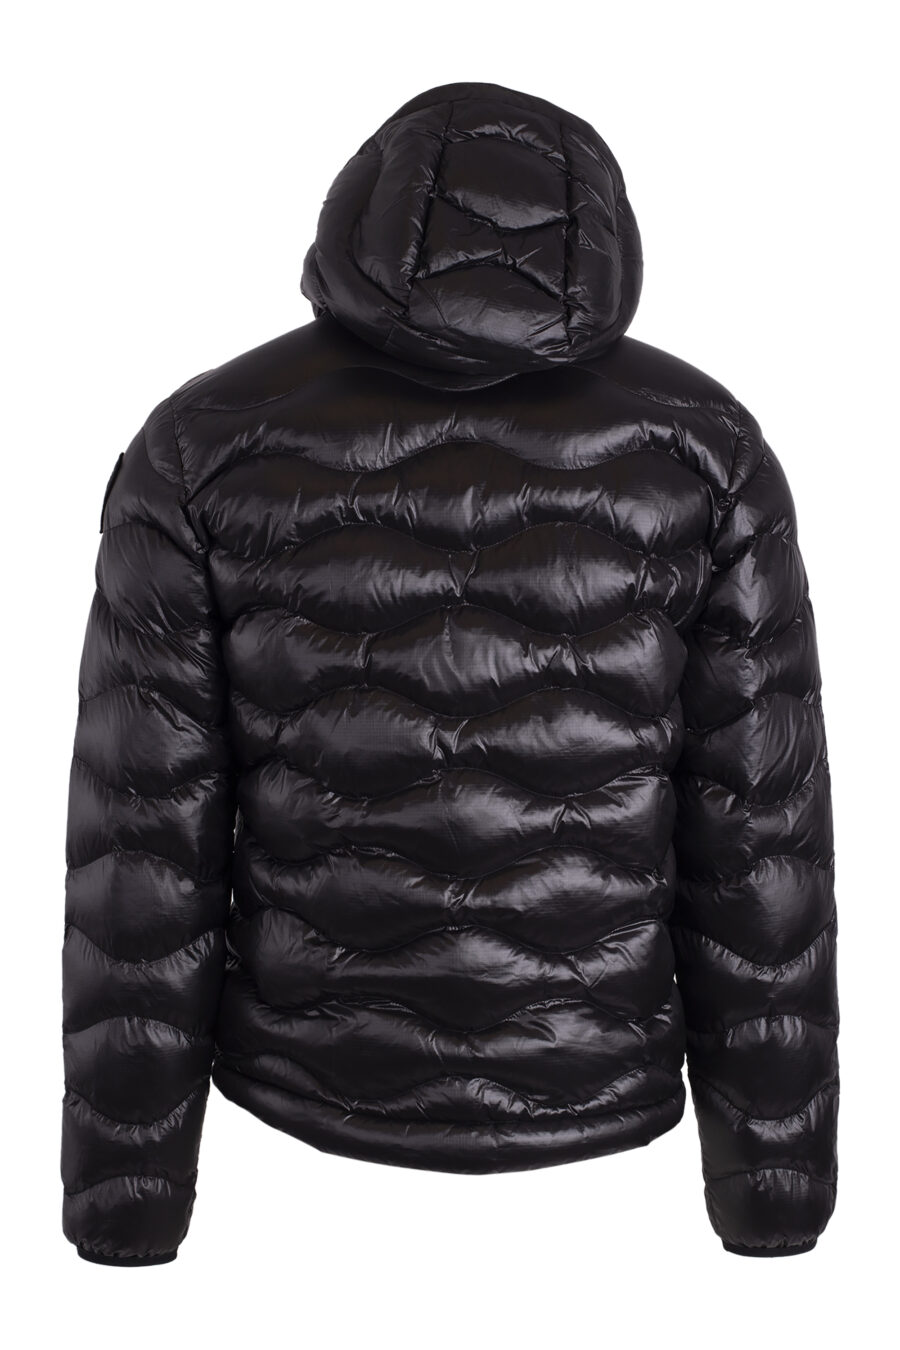 Veste noire à capuche avec lignes ondulées et rembourrage écologique - IMG 4613